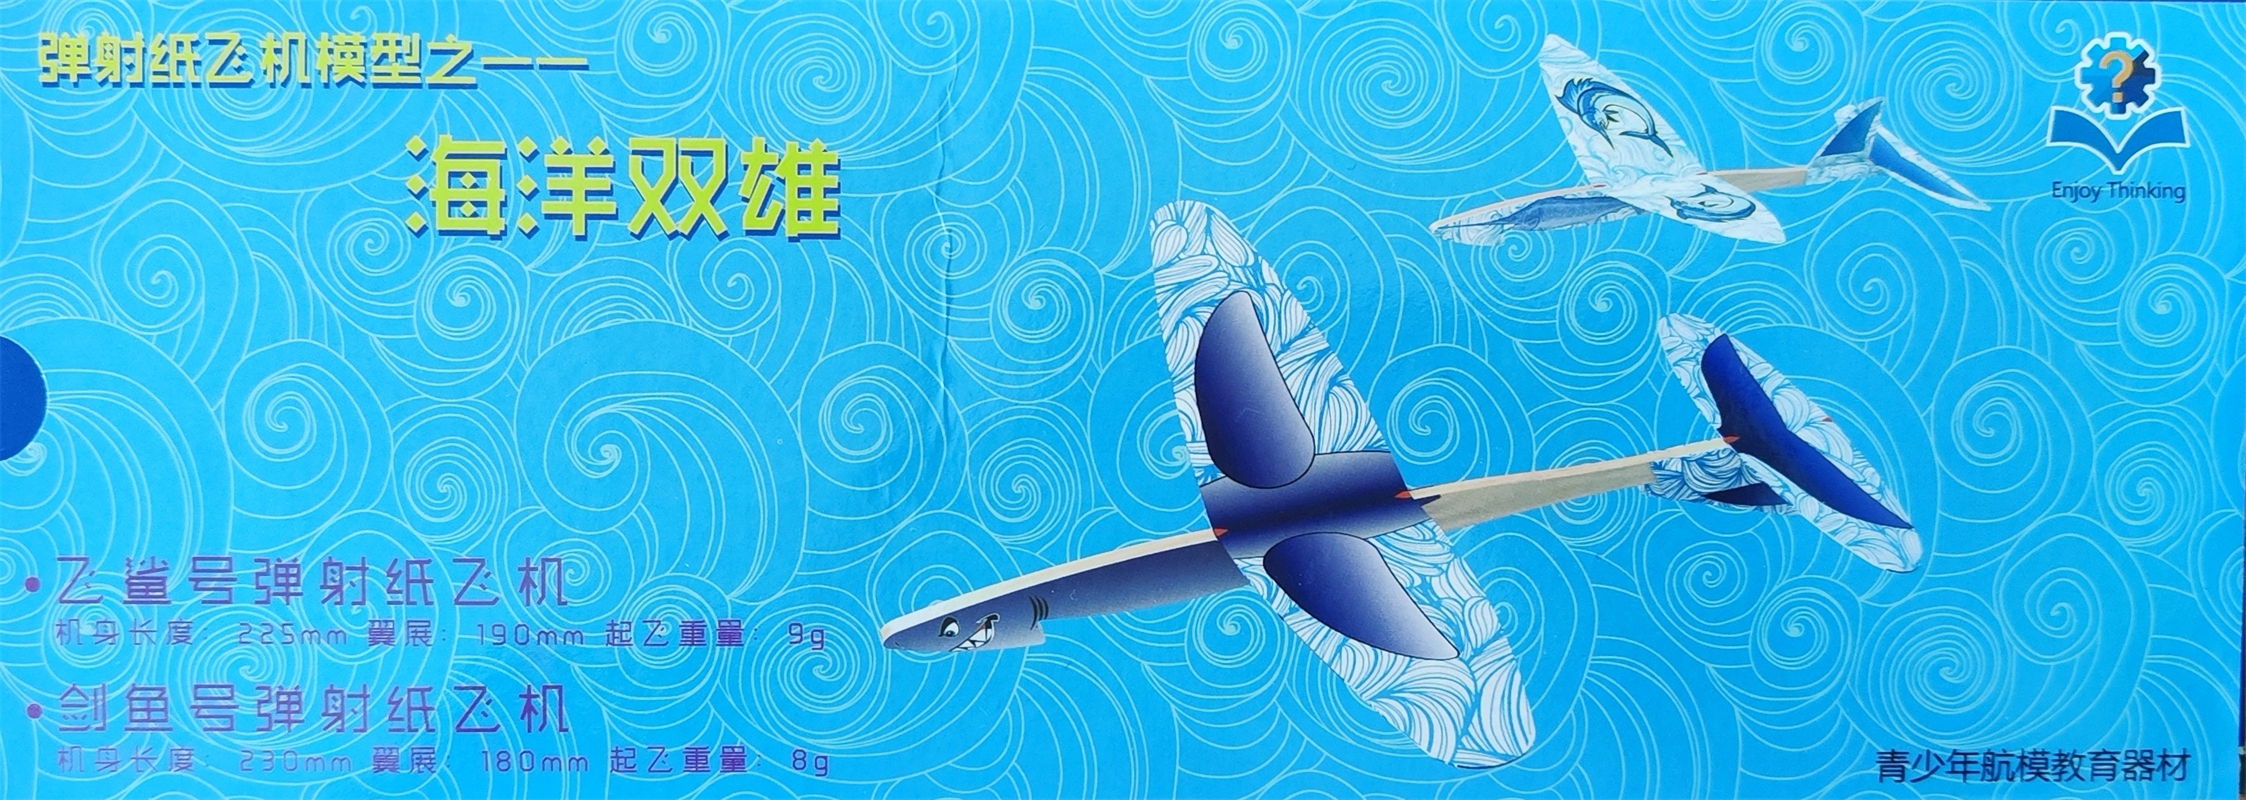 海洋双雄 2件套装飞鲨剑鱼两件套弹射纸飞机模型儿童玩具手抛飞机